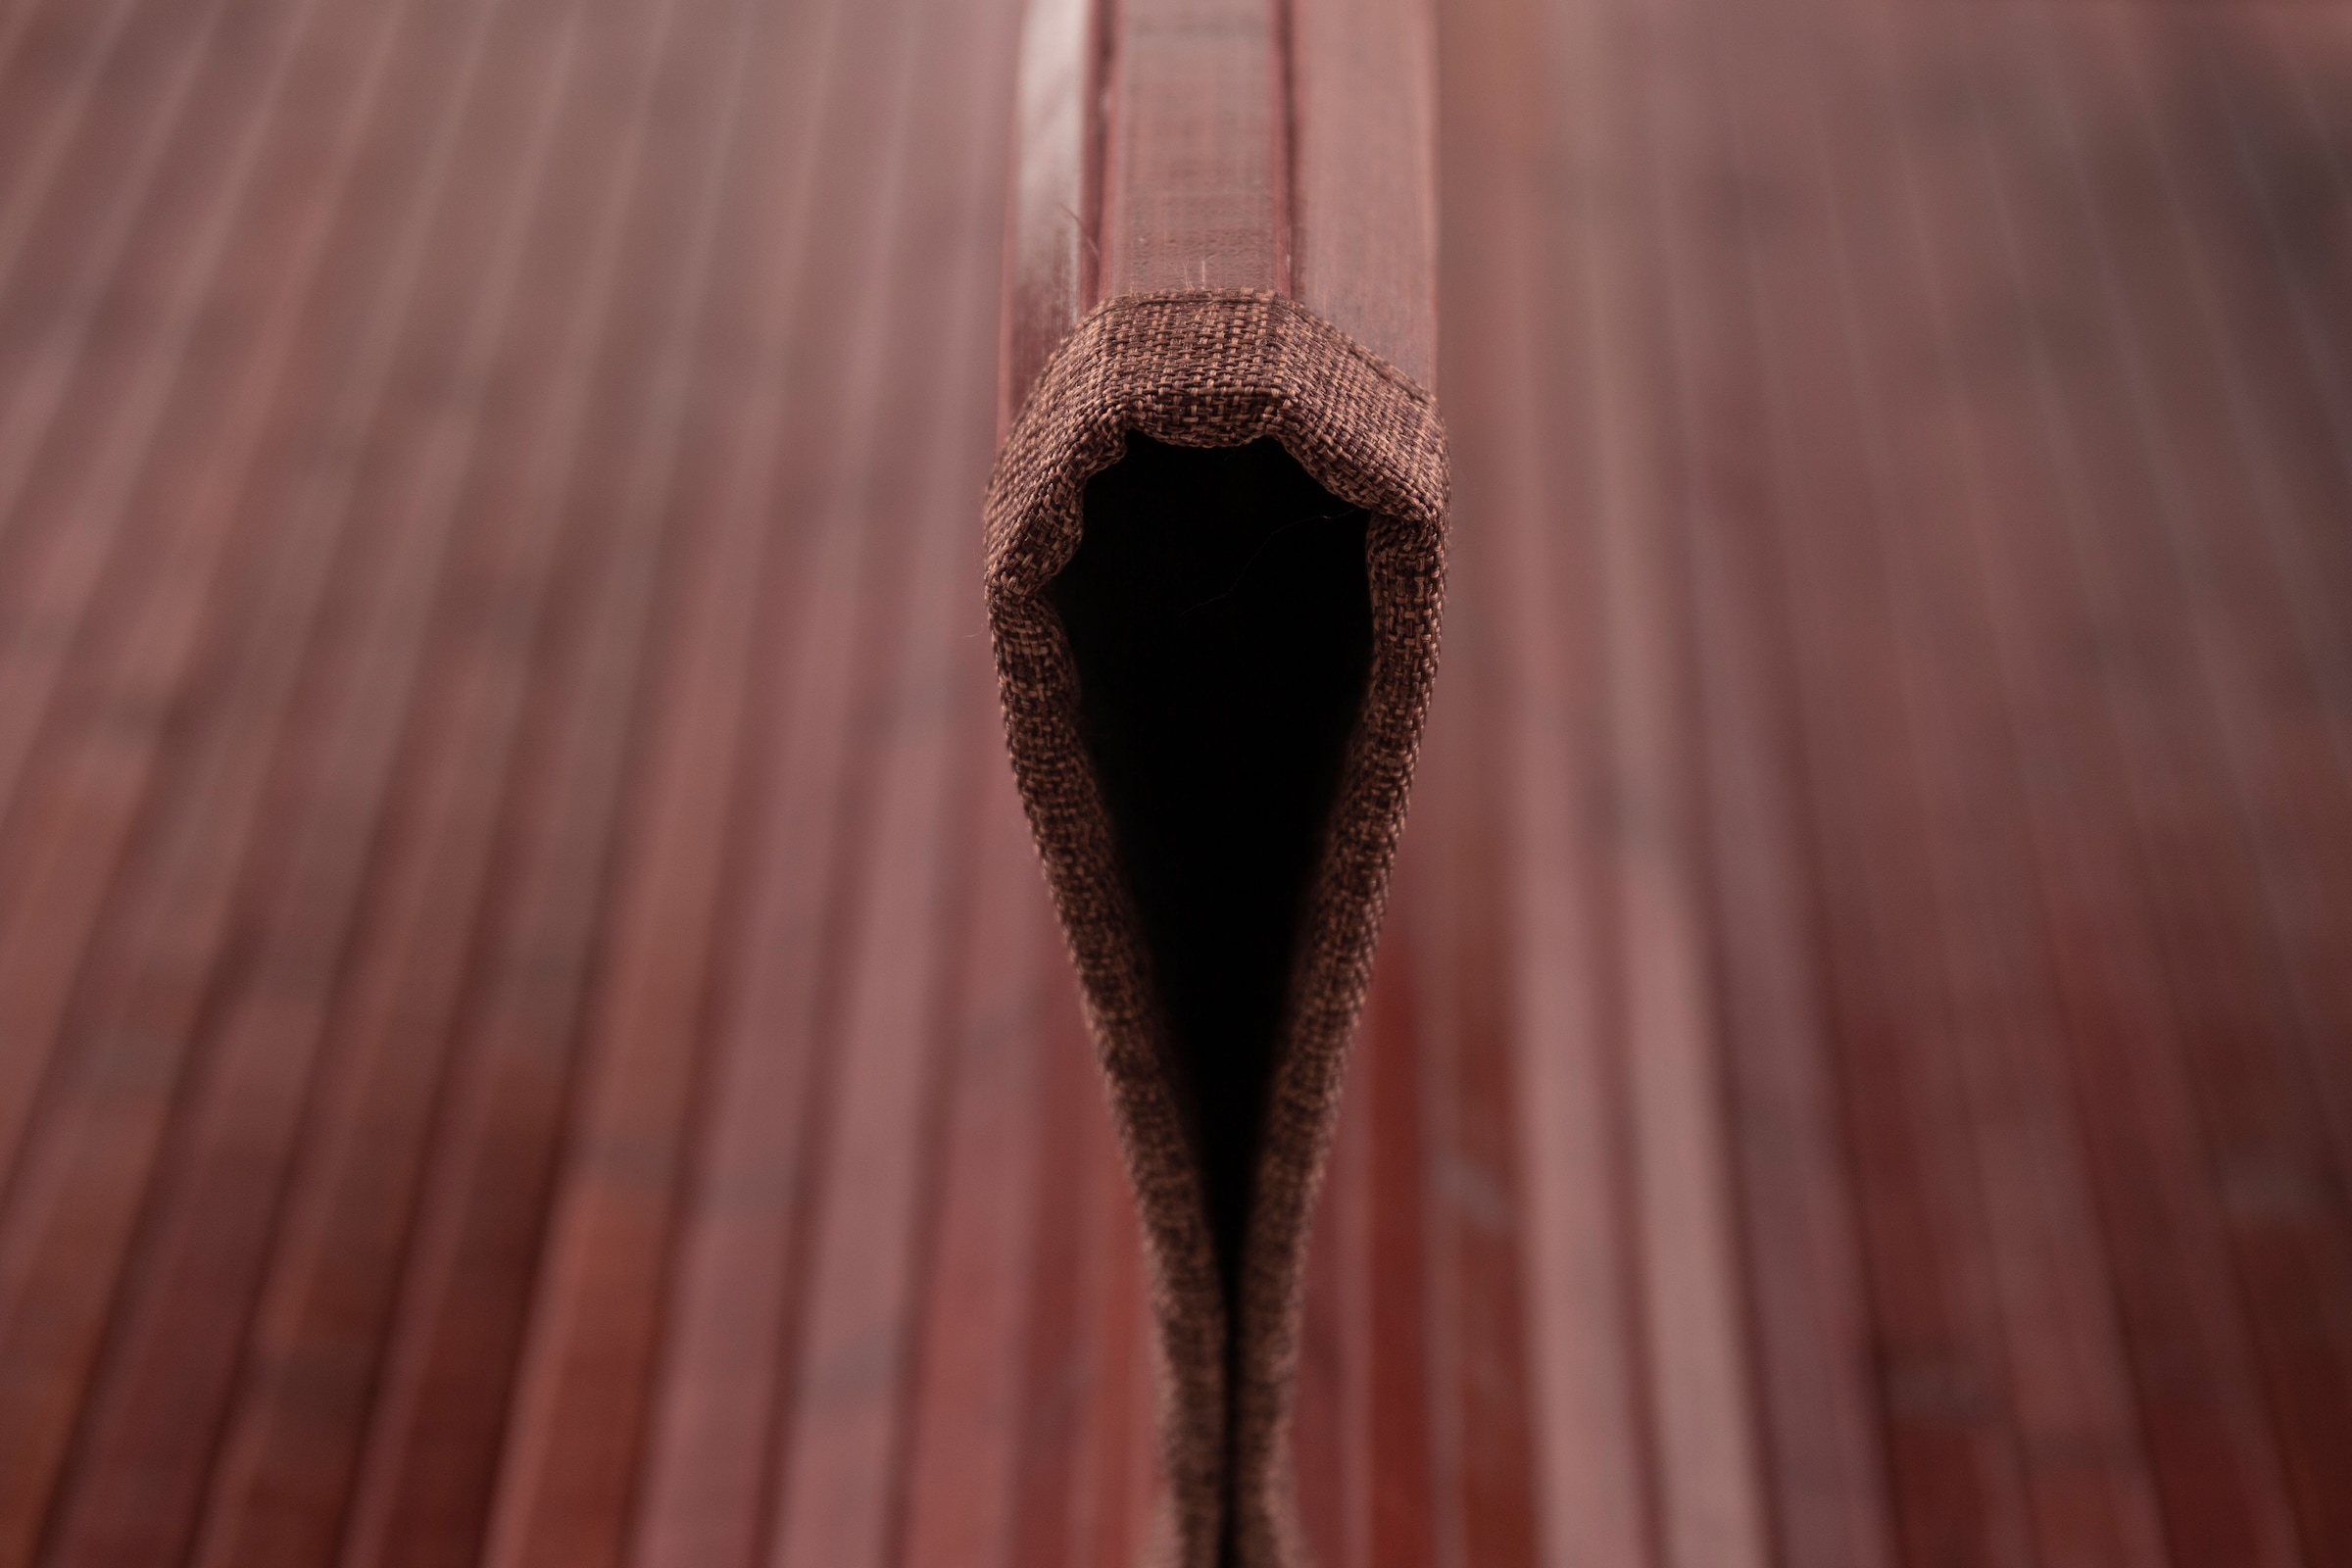 Andiamo Teppich »Bambus«, rechteckig, Wendeteppich, Material: 100% Bambus,  In- und Outdoor geeignet bequem und schnell bestellen | Kurzflor-Teppiche